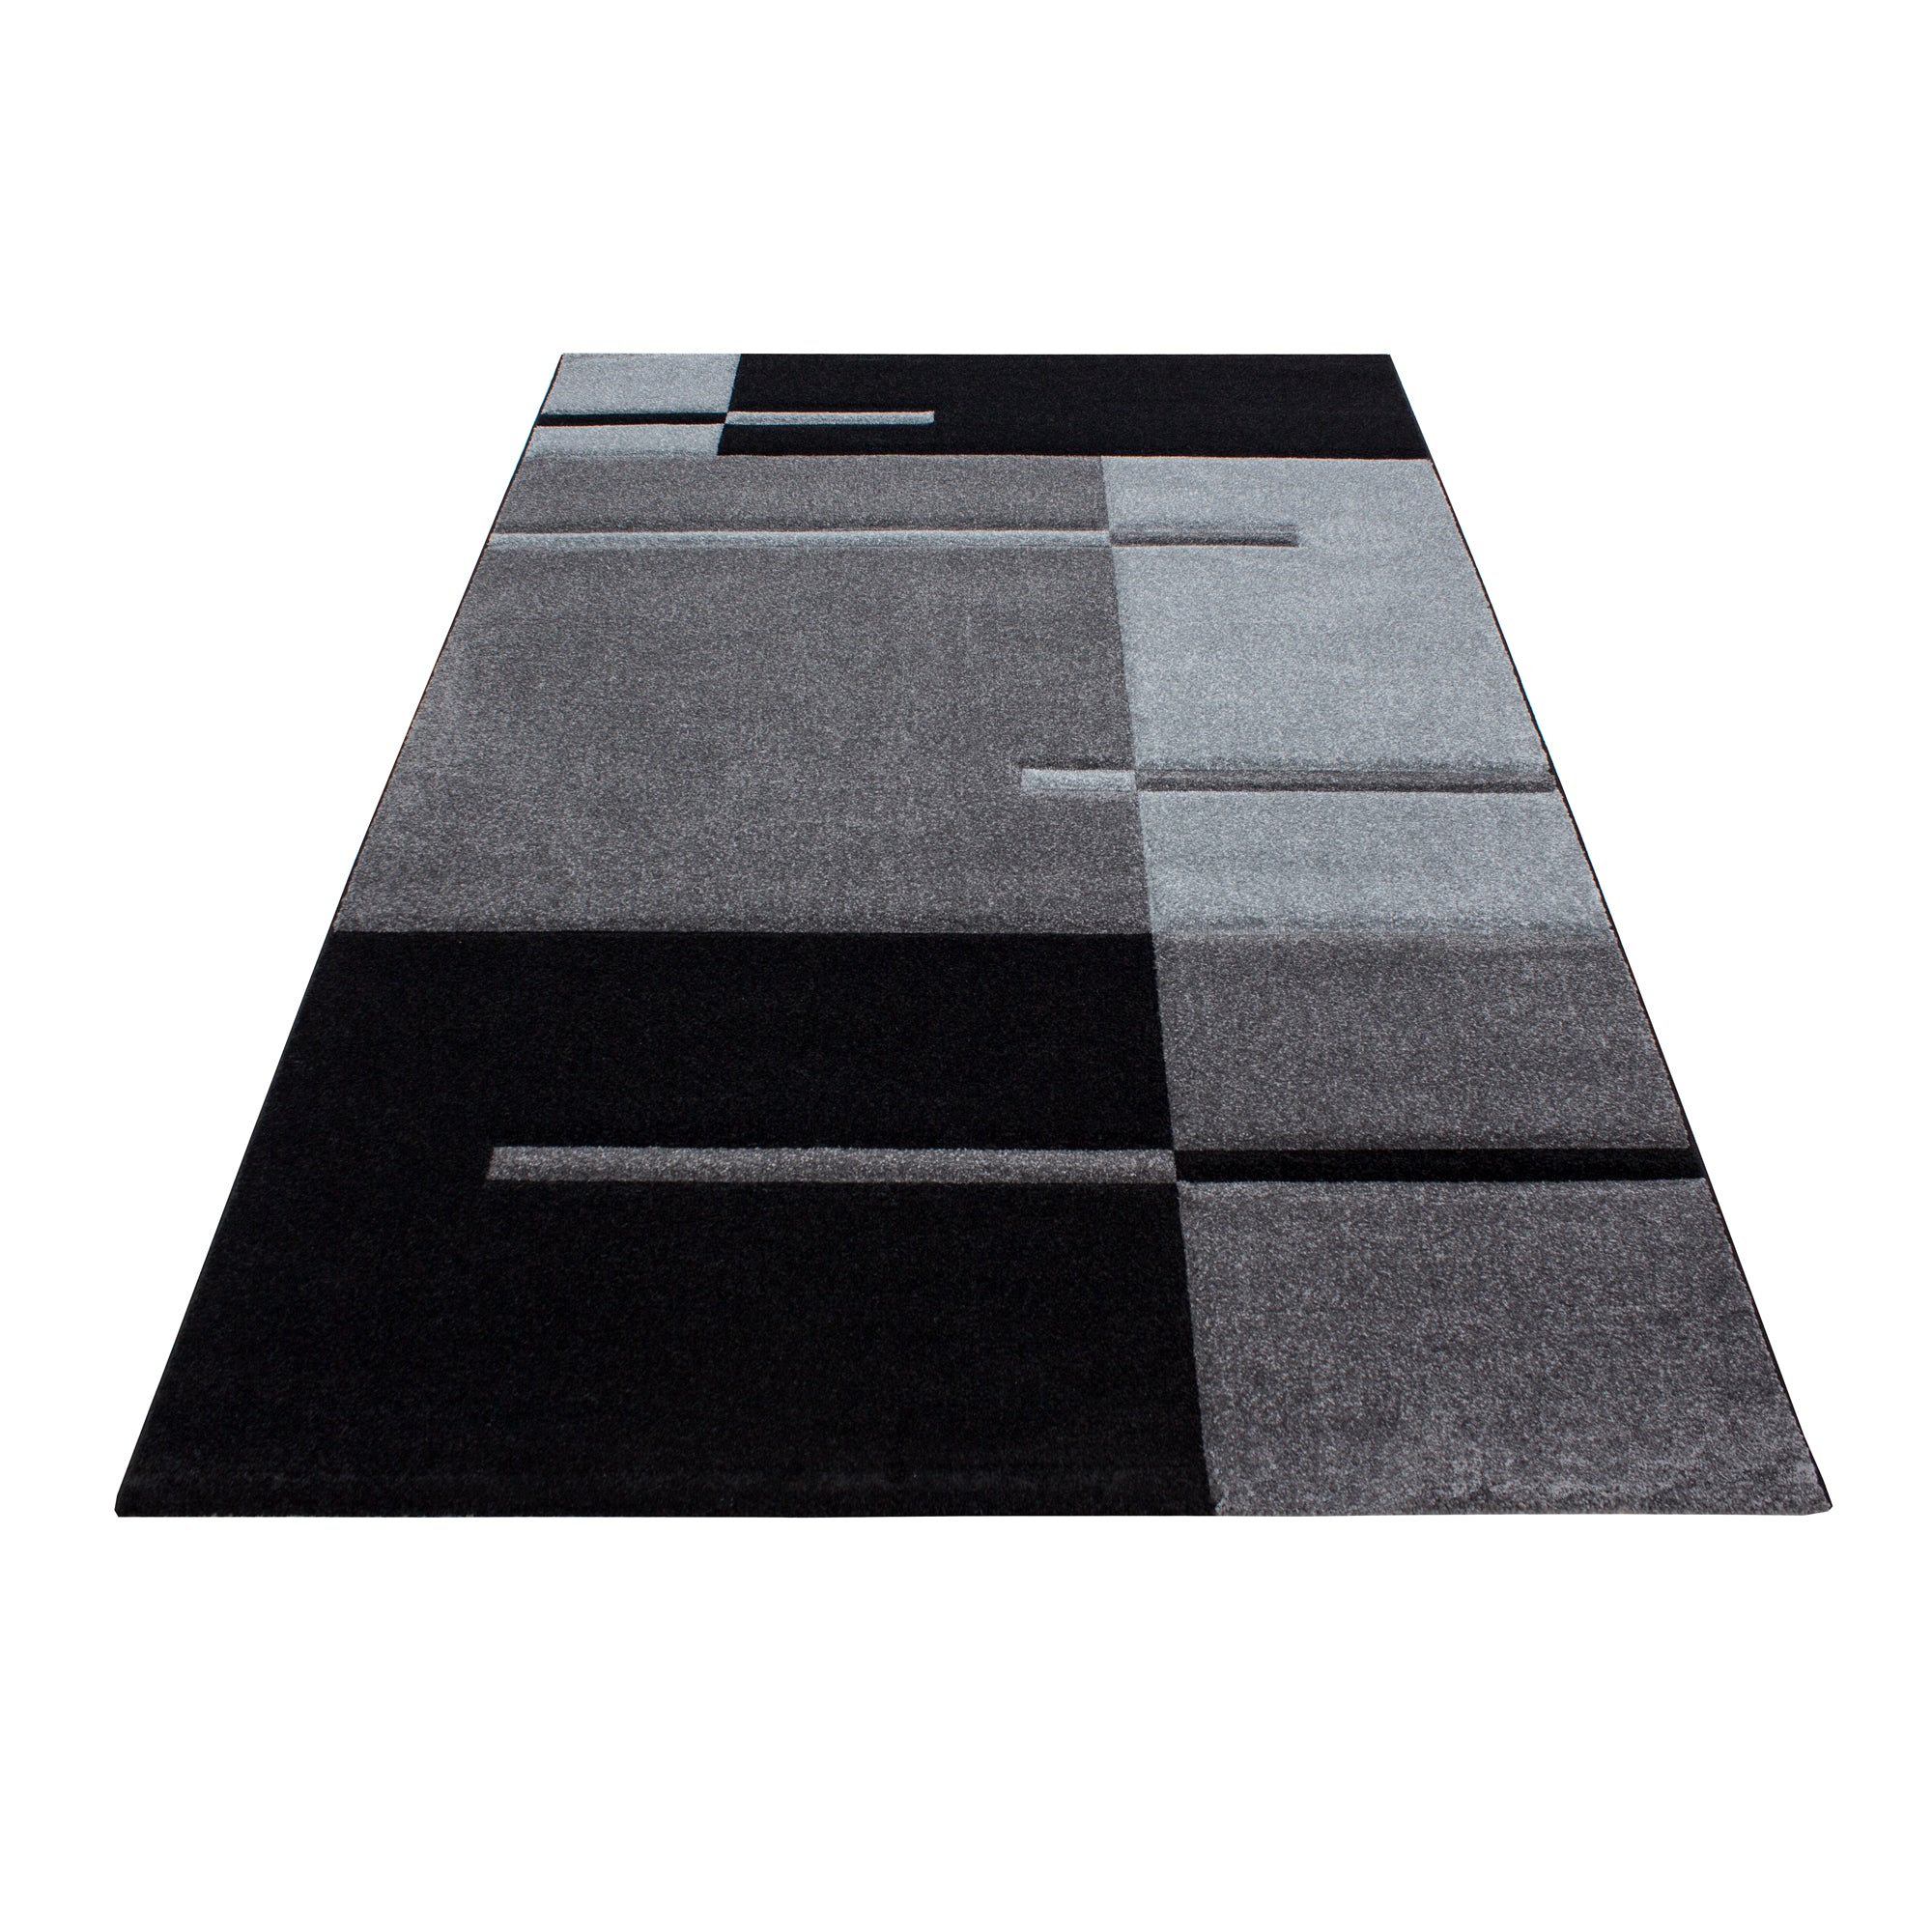 Teppich Modern Designer Konturschnitt Linien Kariert Optik Schwarz Grau Farben